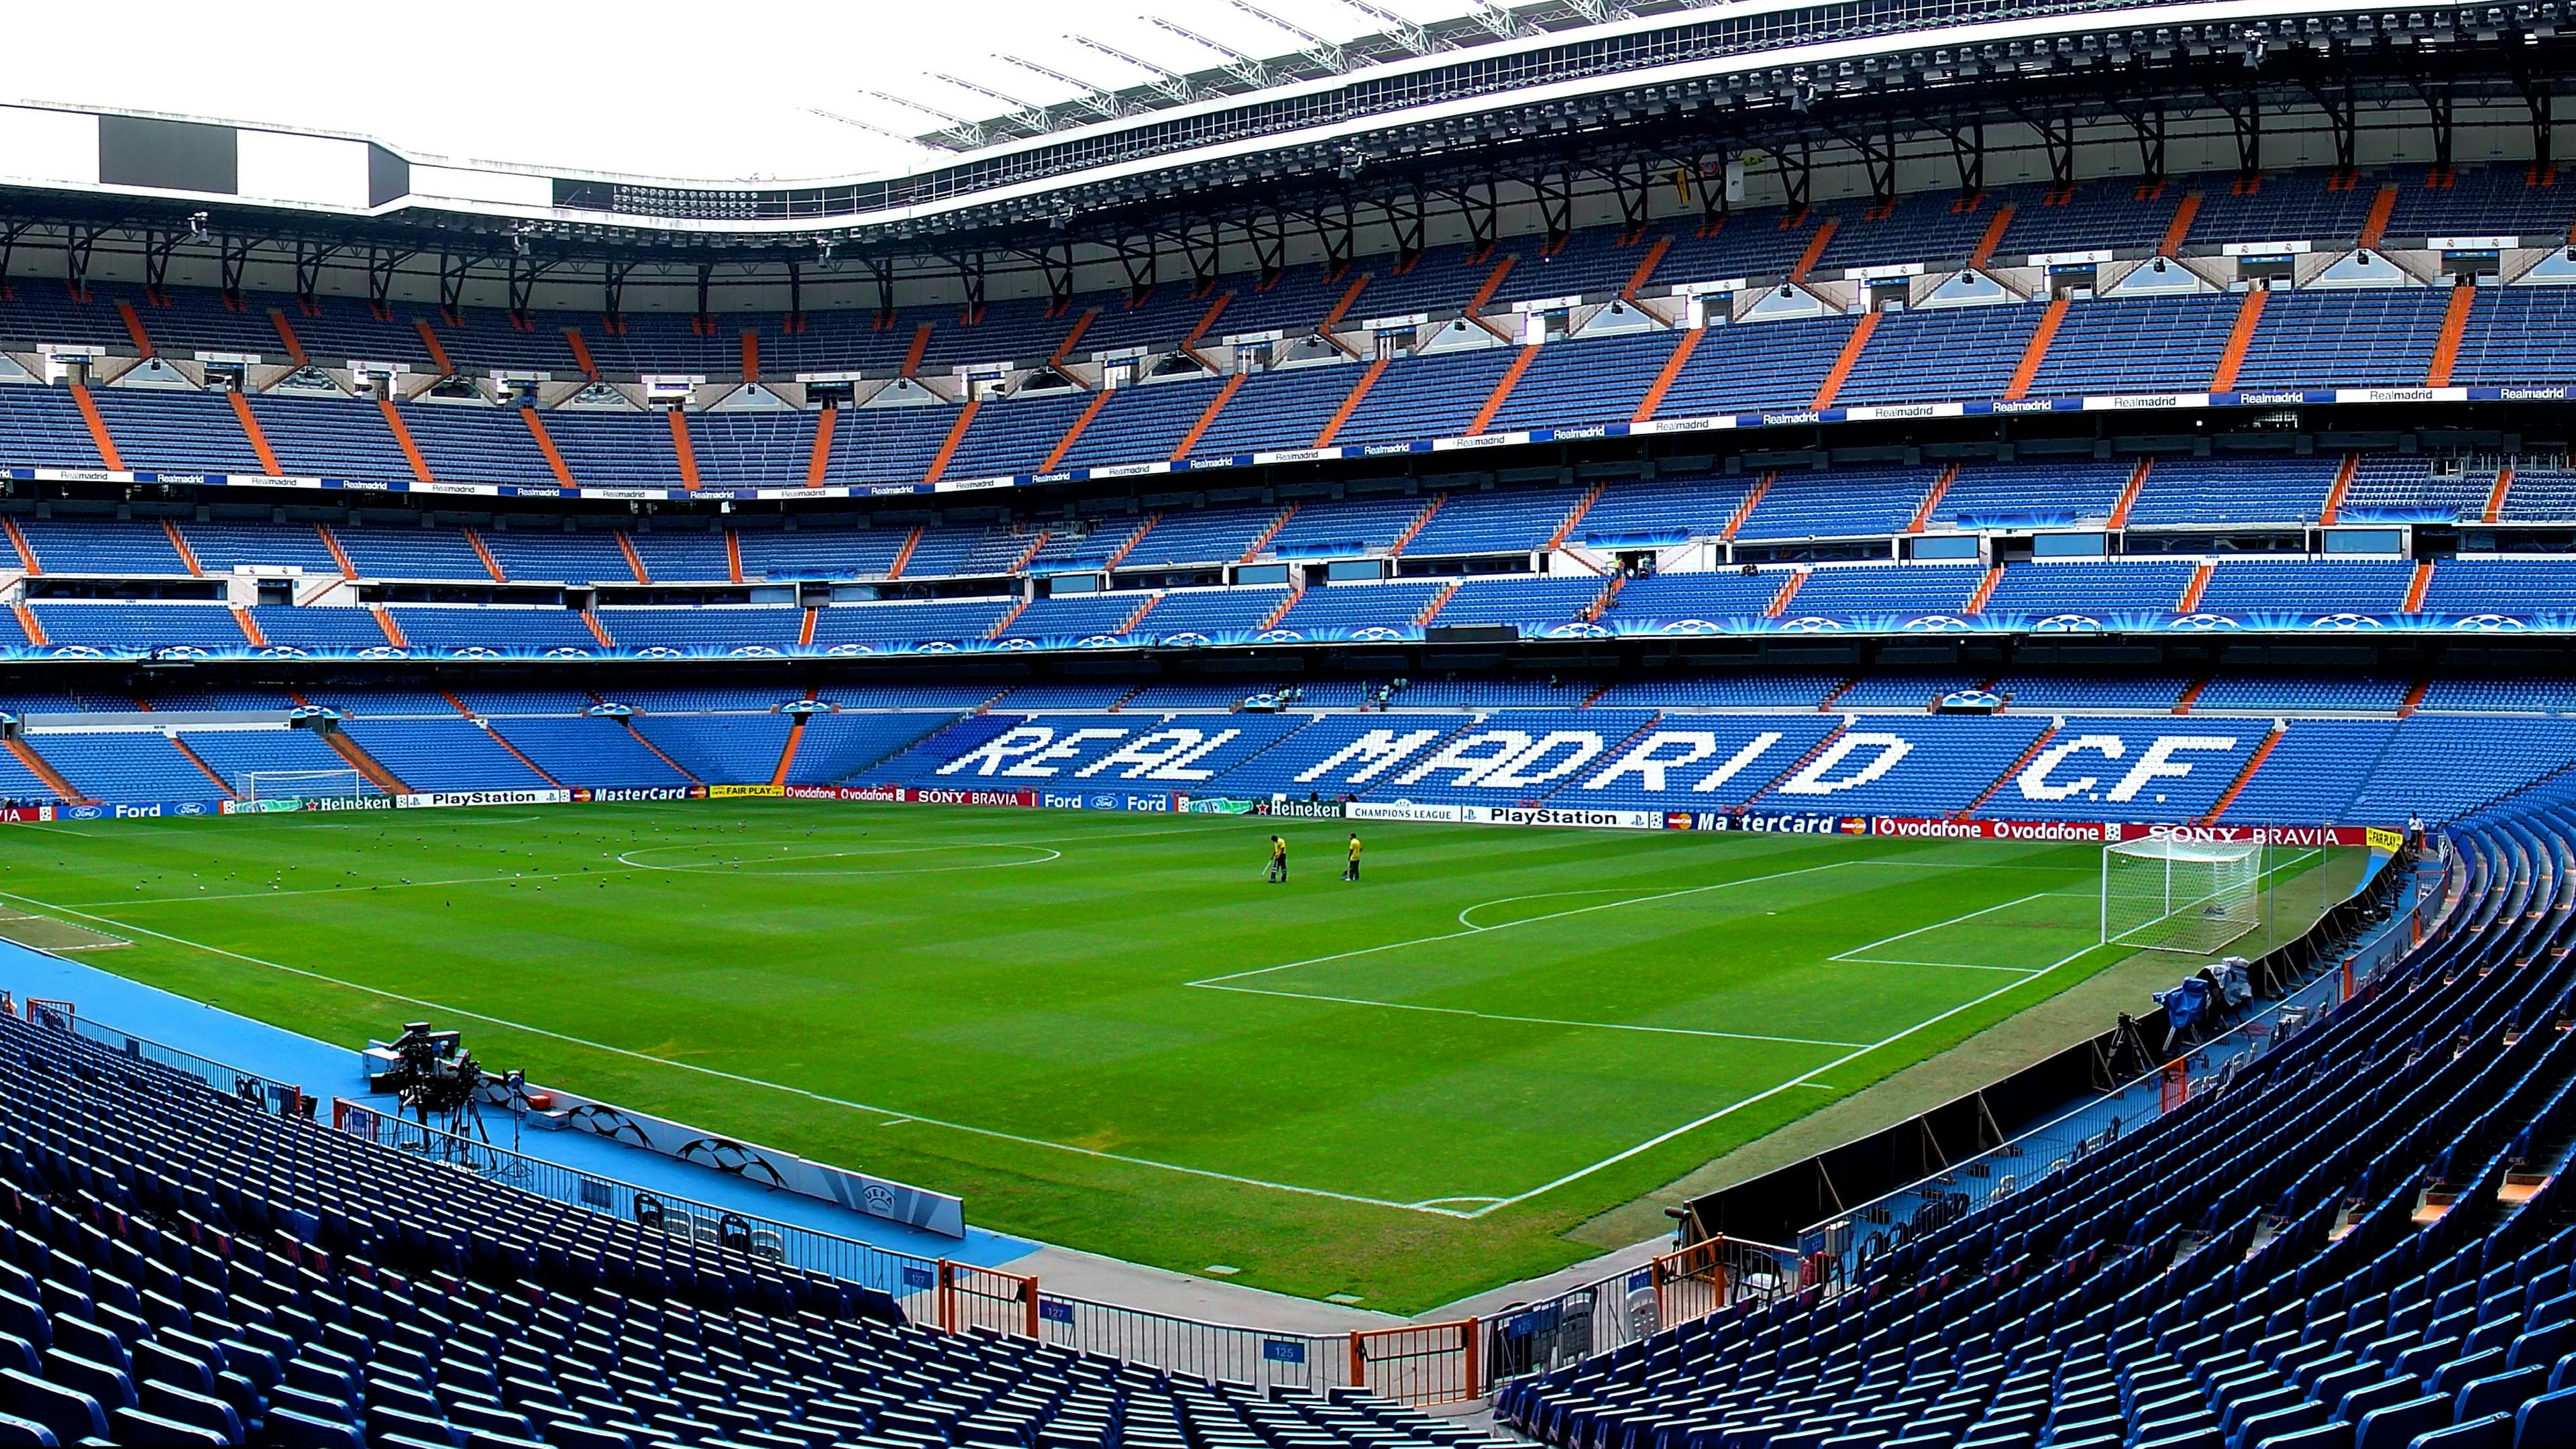 Visite du meilleur de Madrid et billets pour le stade Santiago Bernabeu